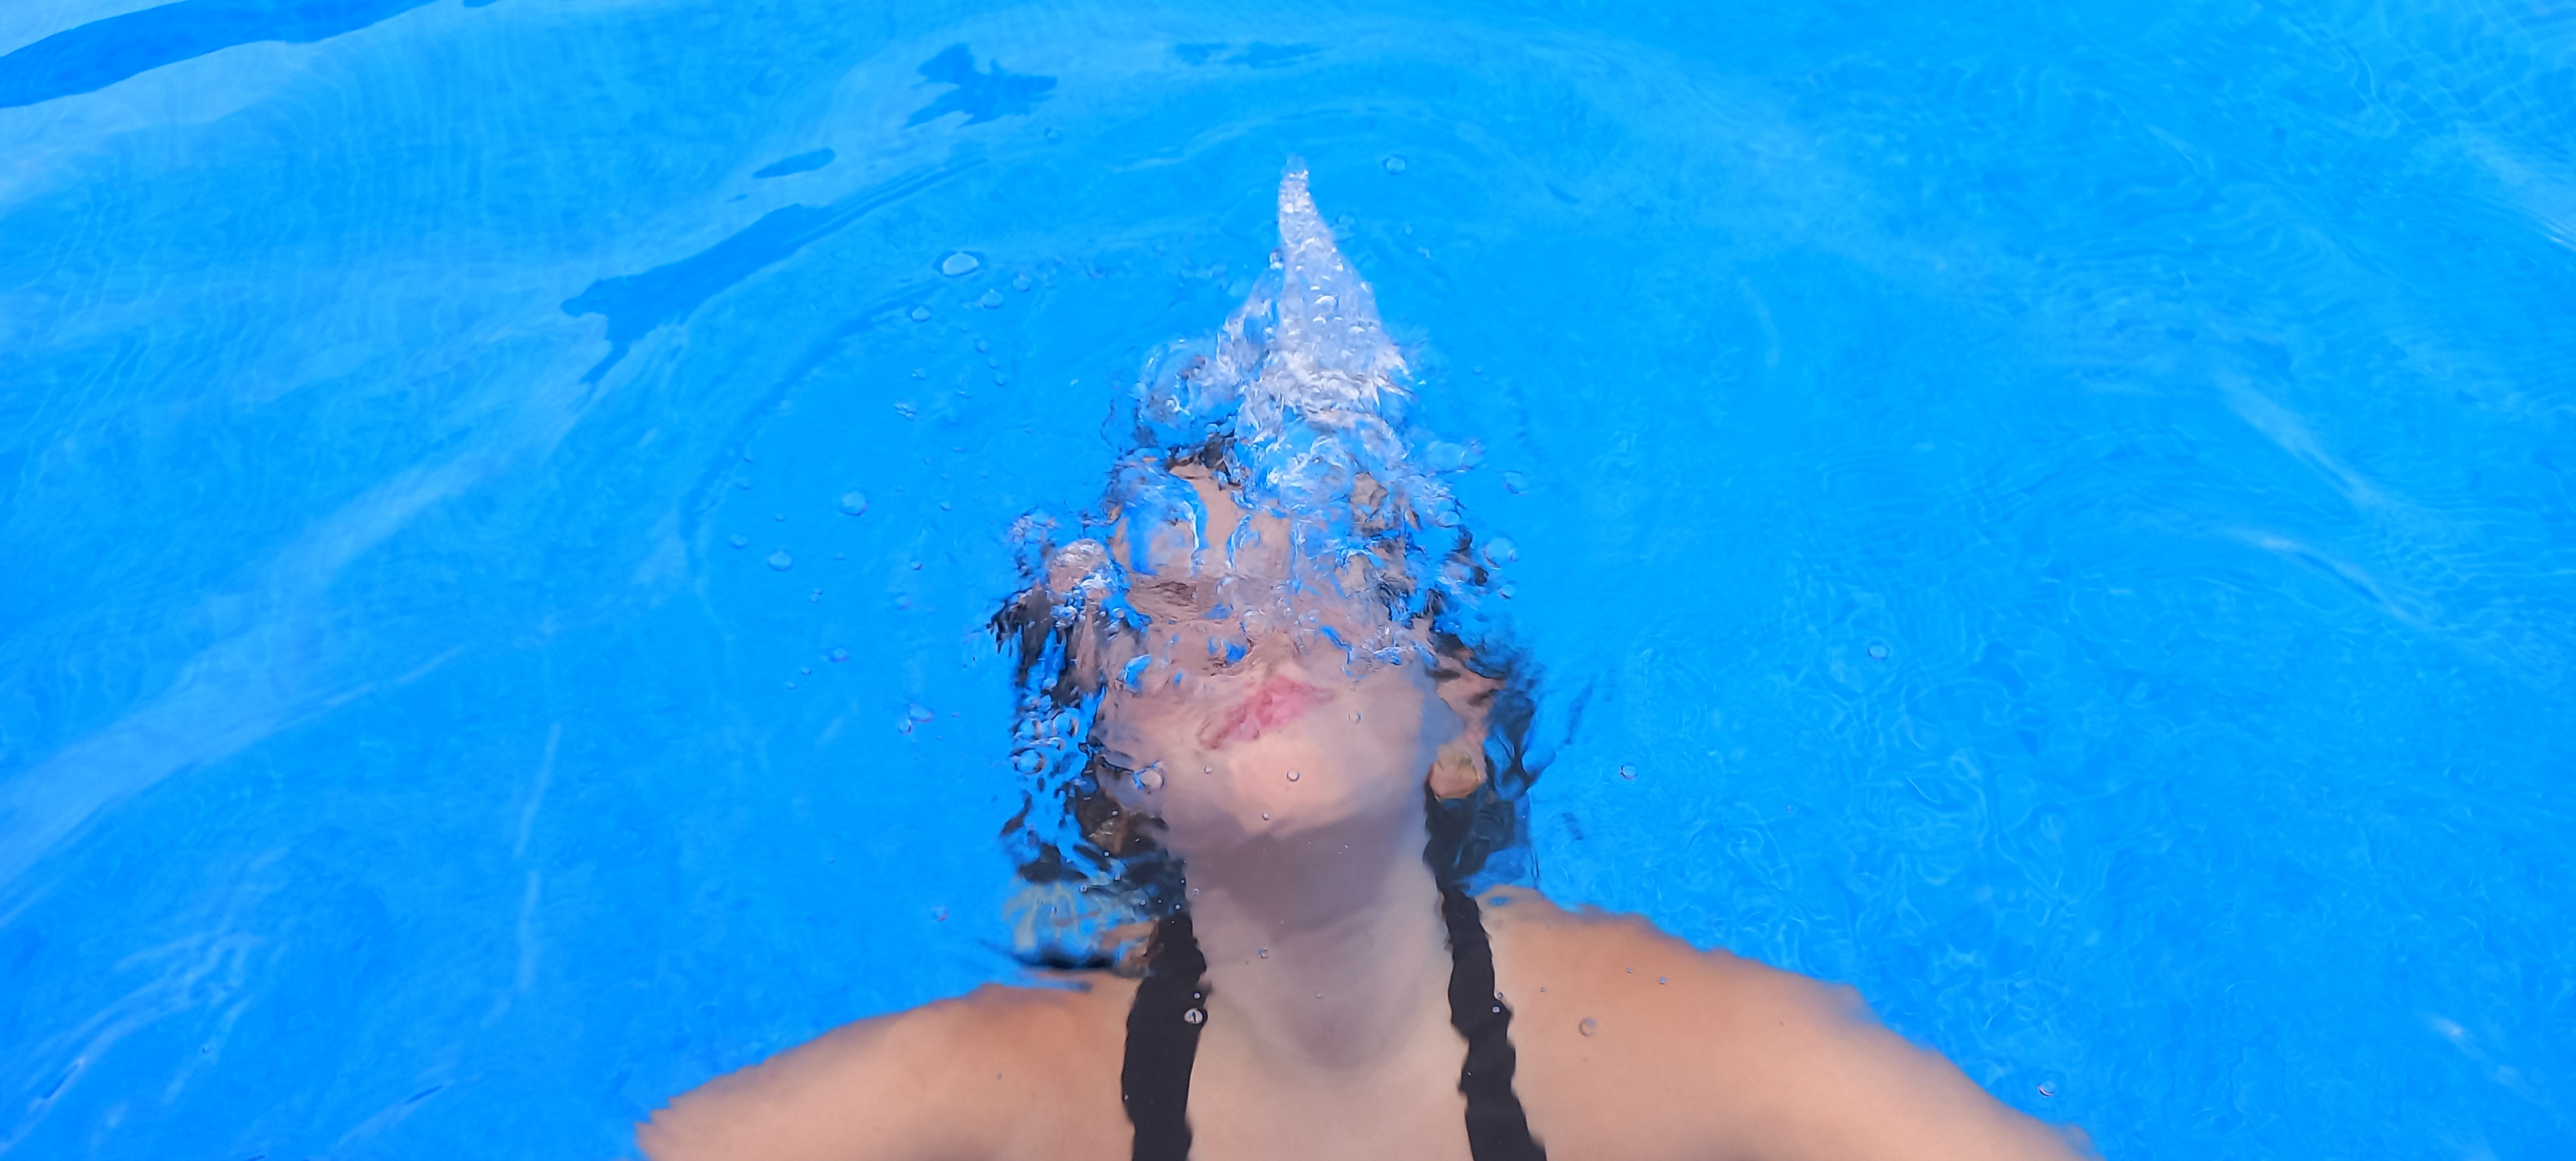 Fent bombolles a la piscina · Sant Cugat del Vallès FOTO:  Mireia Viles Arrufat